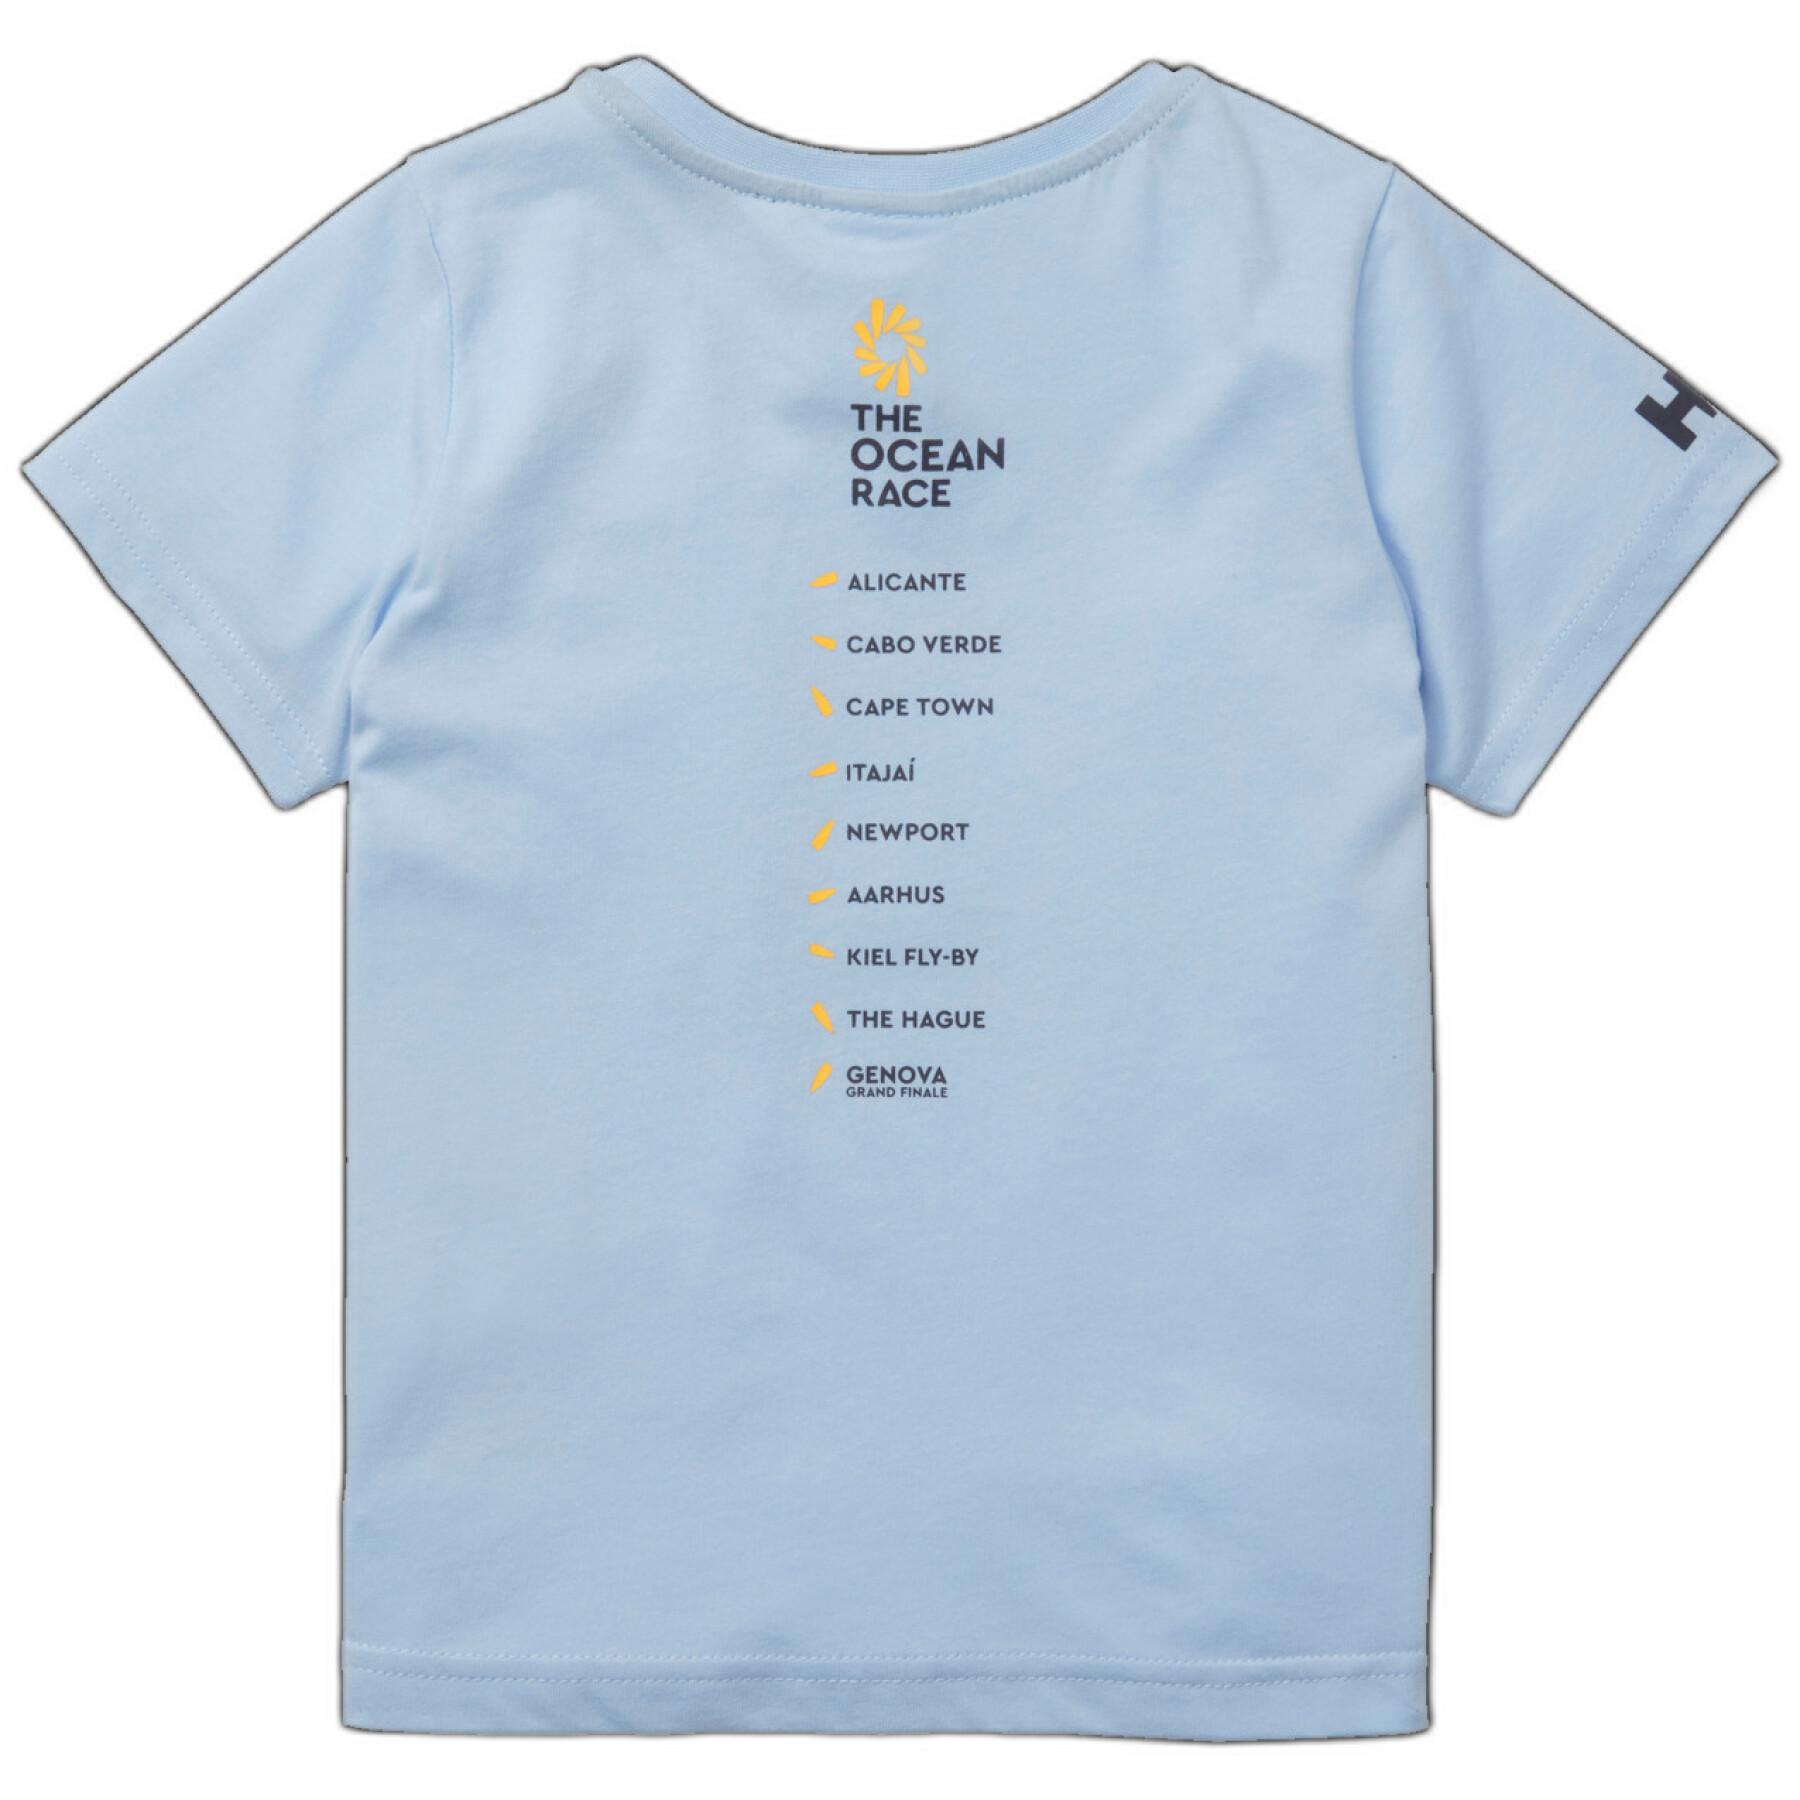 Kinder-T-shirt Helly Hansen The Ocean Race